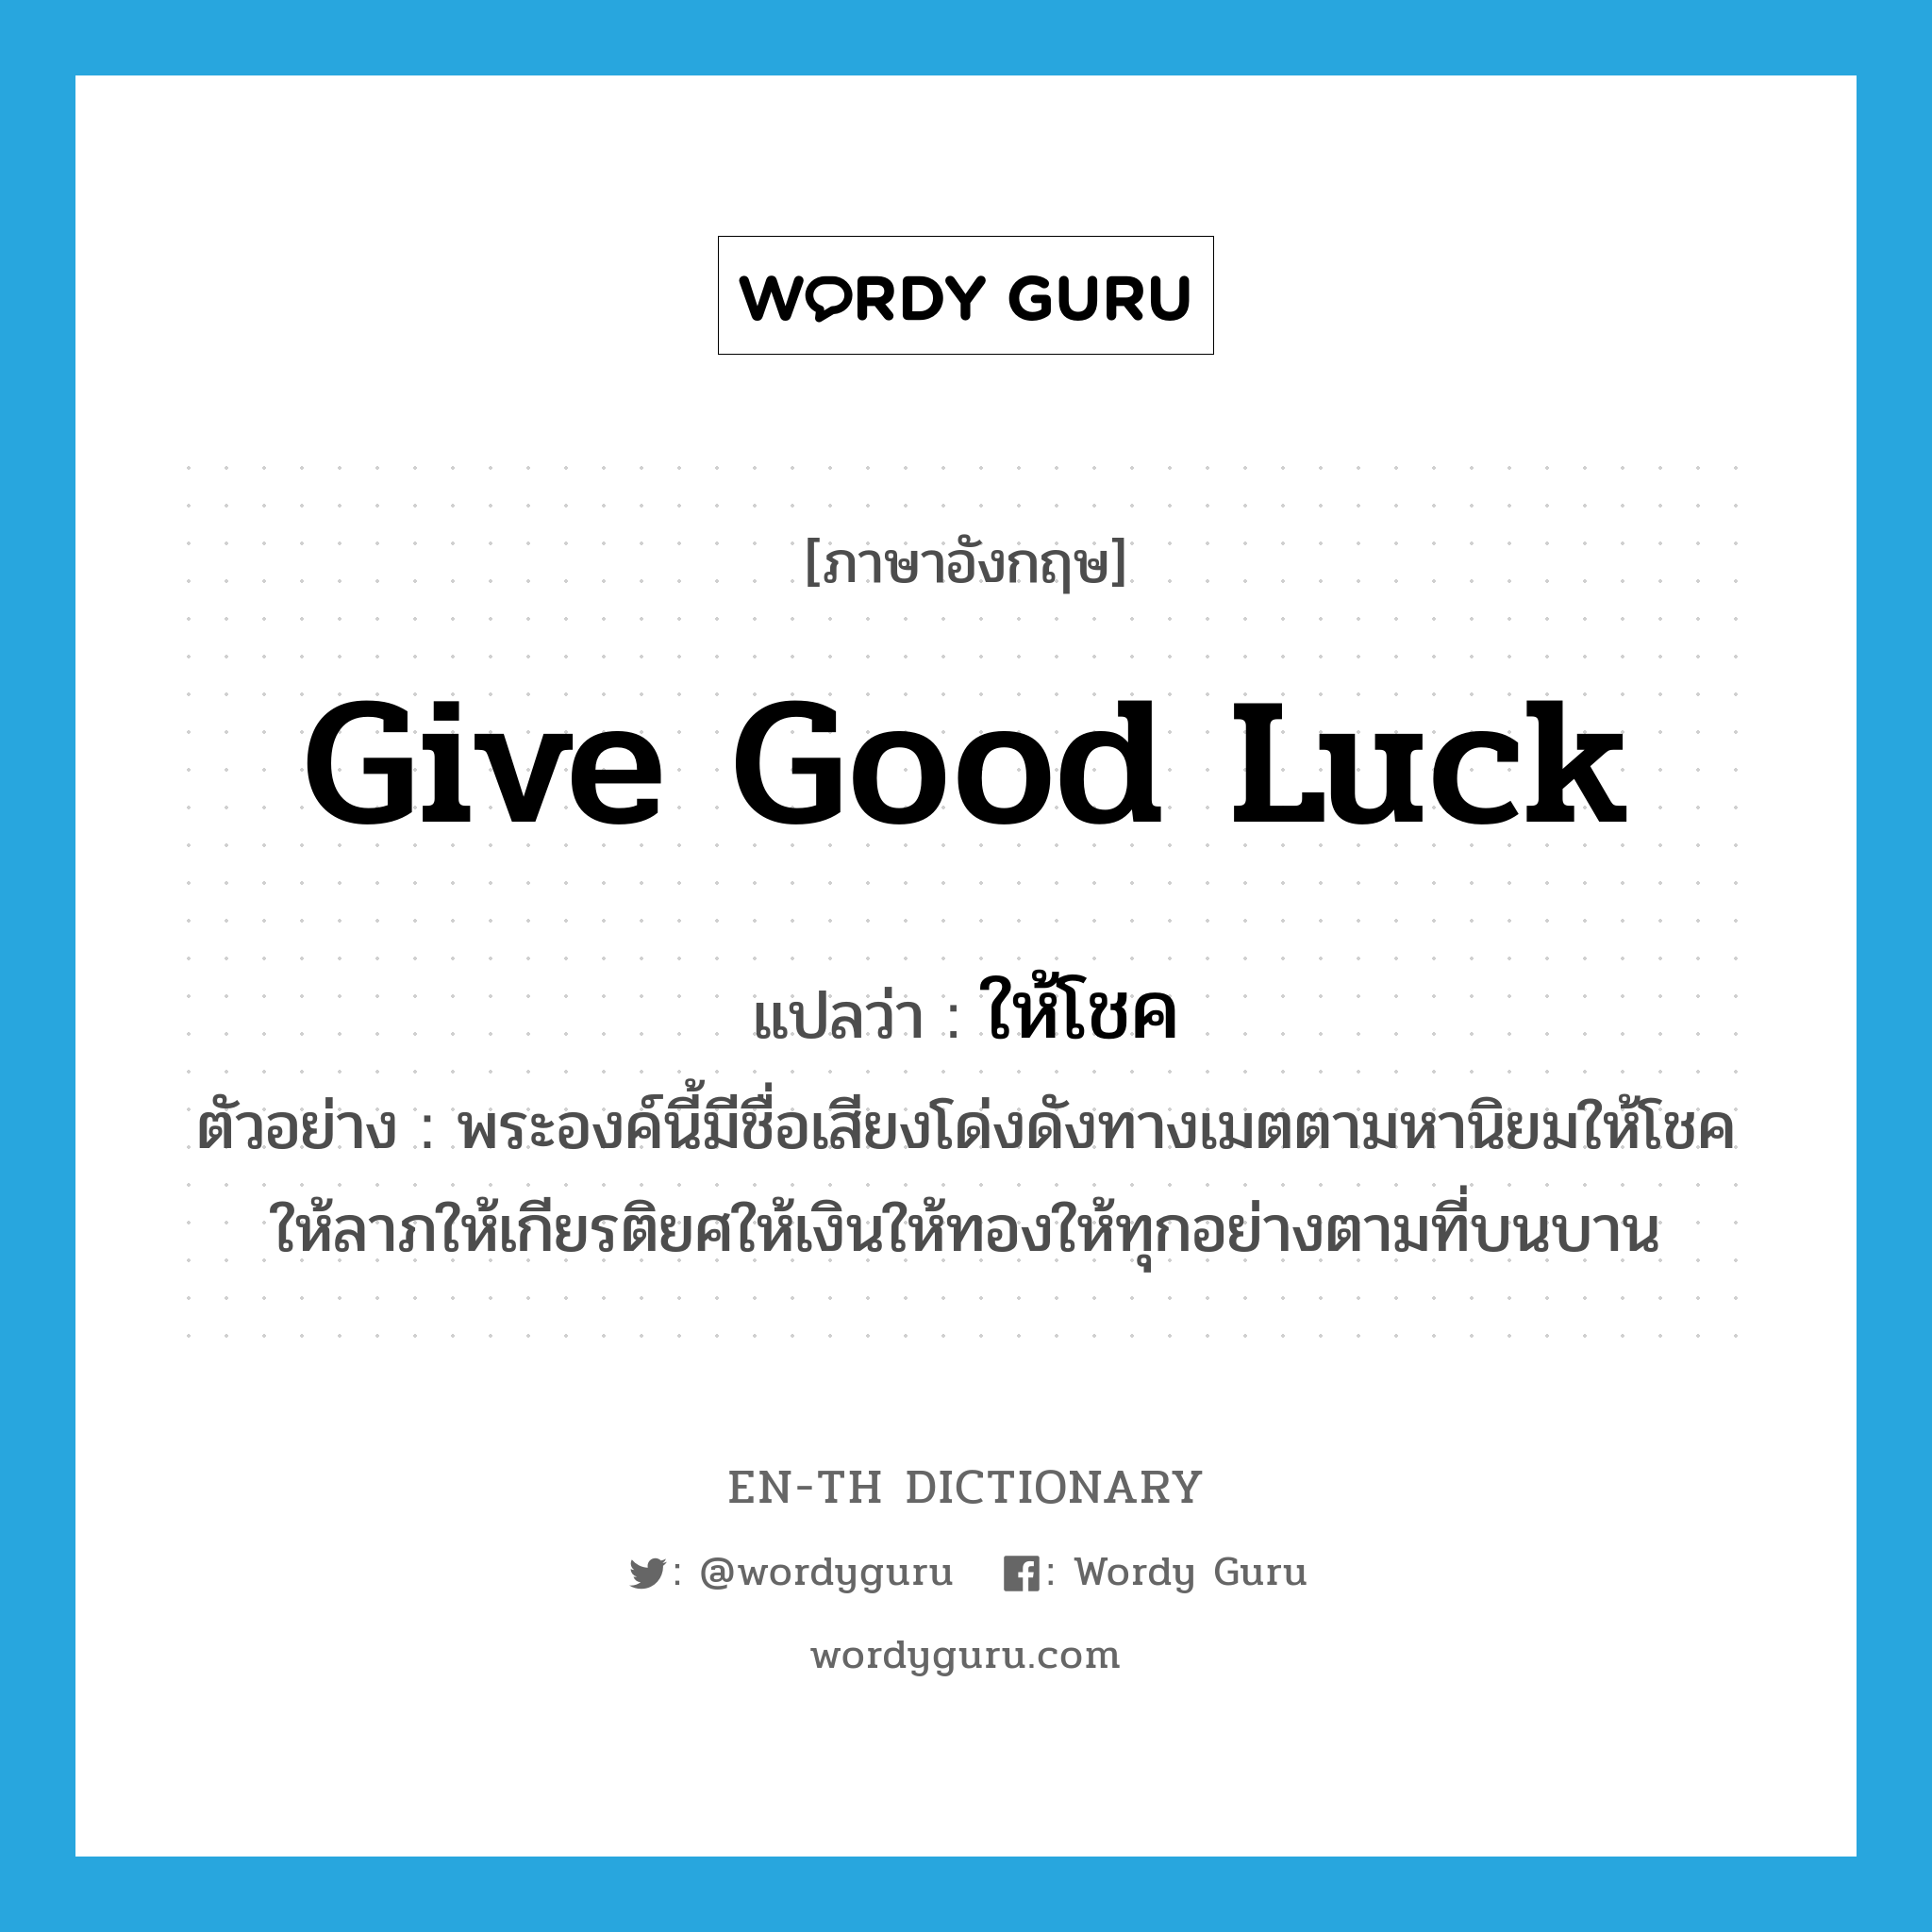 give good luck แปลว่า?, คำศัพท์ภาษาอังกฤษ give good luck แปลว่า ให้โชค ประเภท V ตัวอย่าง พระองค์นี้มีชื่อเสียงโด่งดังทางเมตตามหานิยมให้โชคให้ลาภให้เกียรติยศให้เงินให้ทองให้ทุกอย่างตามที่บนบาน หมวด V